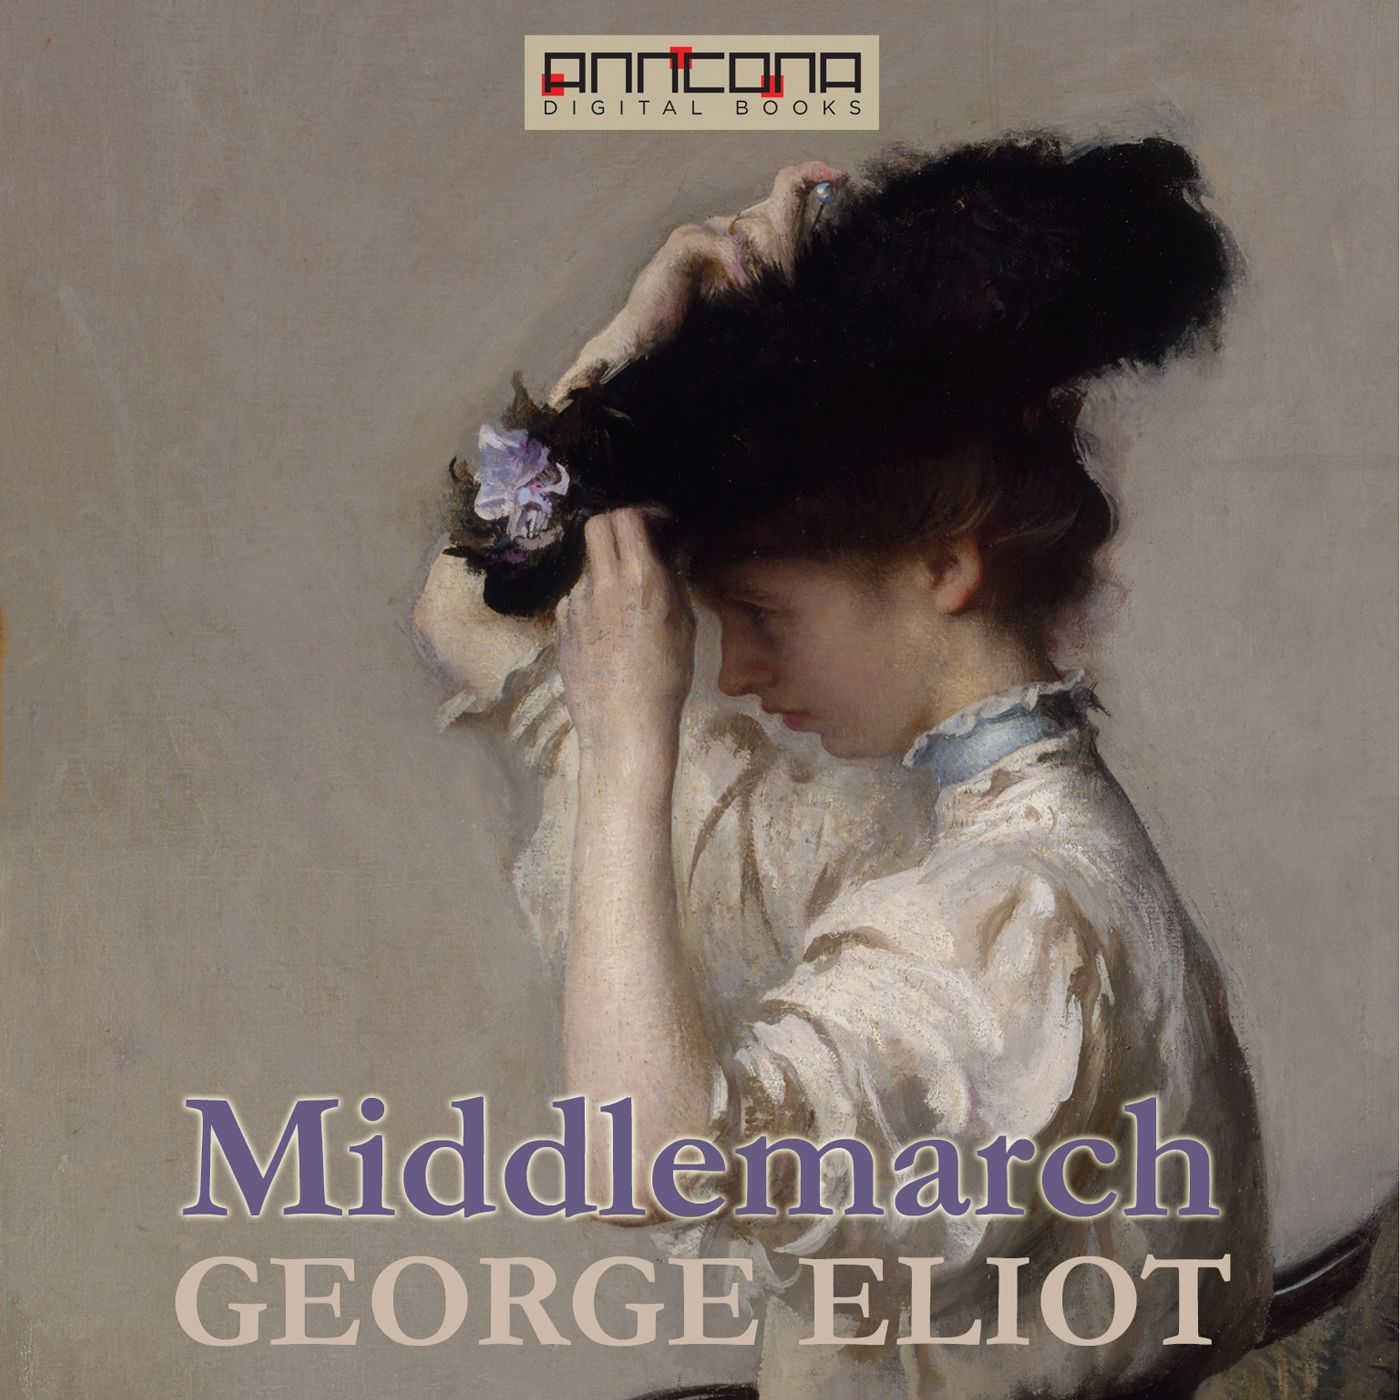 Middlemarch, lydbog af George Eliot